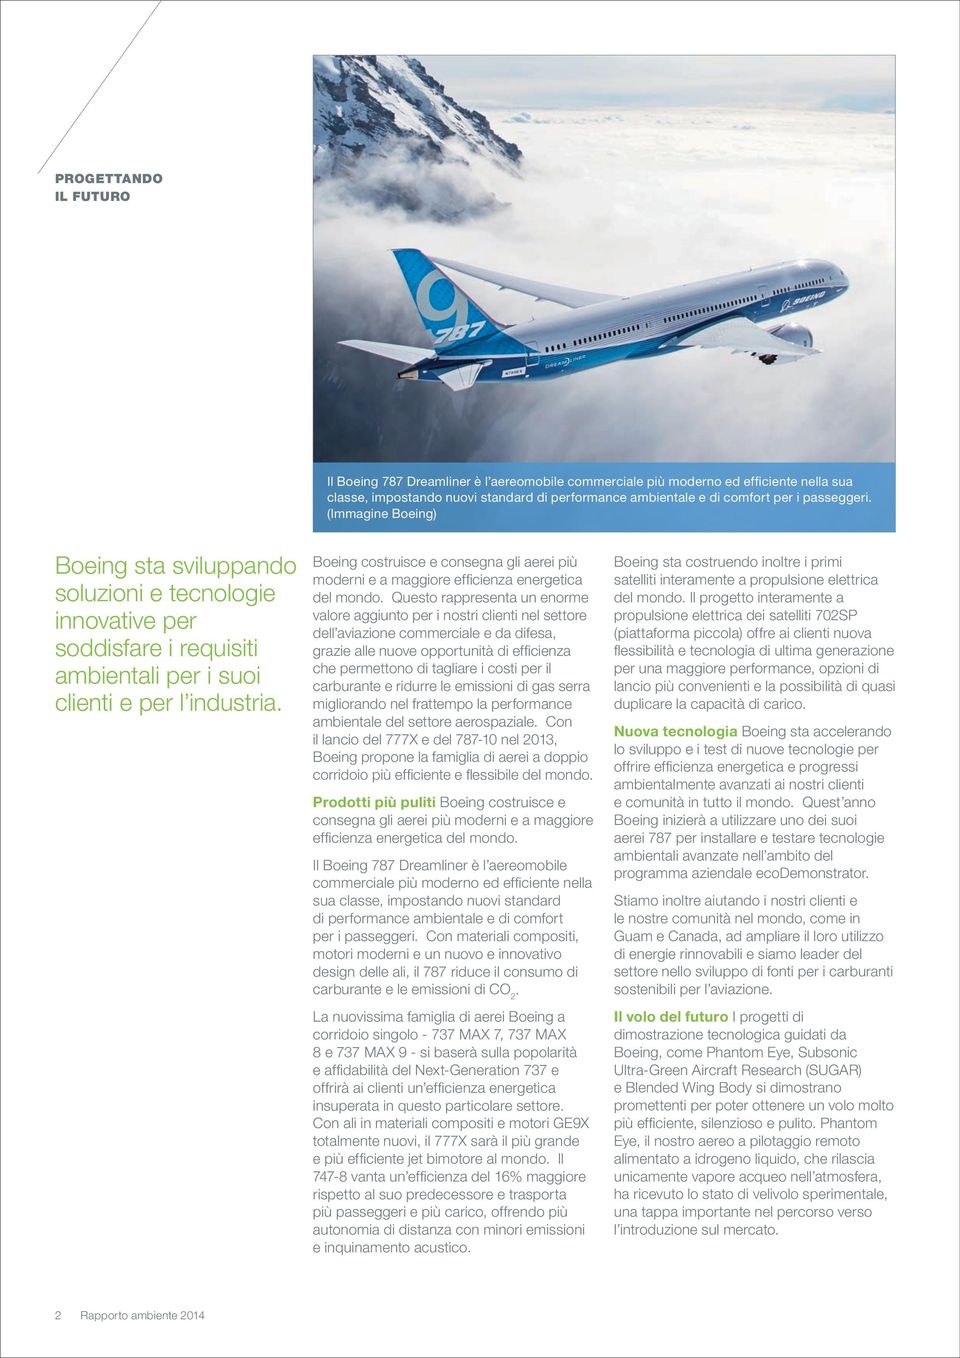 Boeing costruisce e consegna gli aerei più moderni e a maggiore efficienza energetica del mondo.